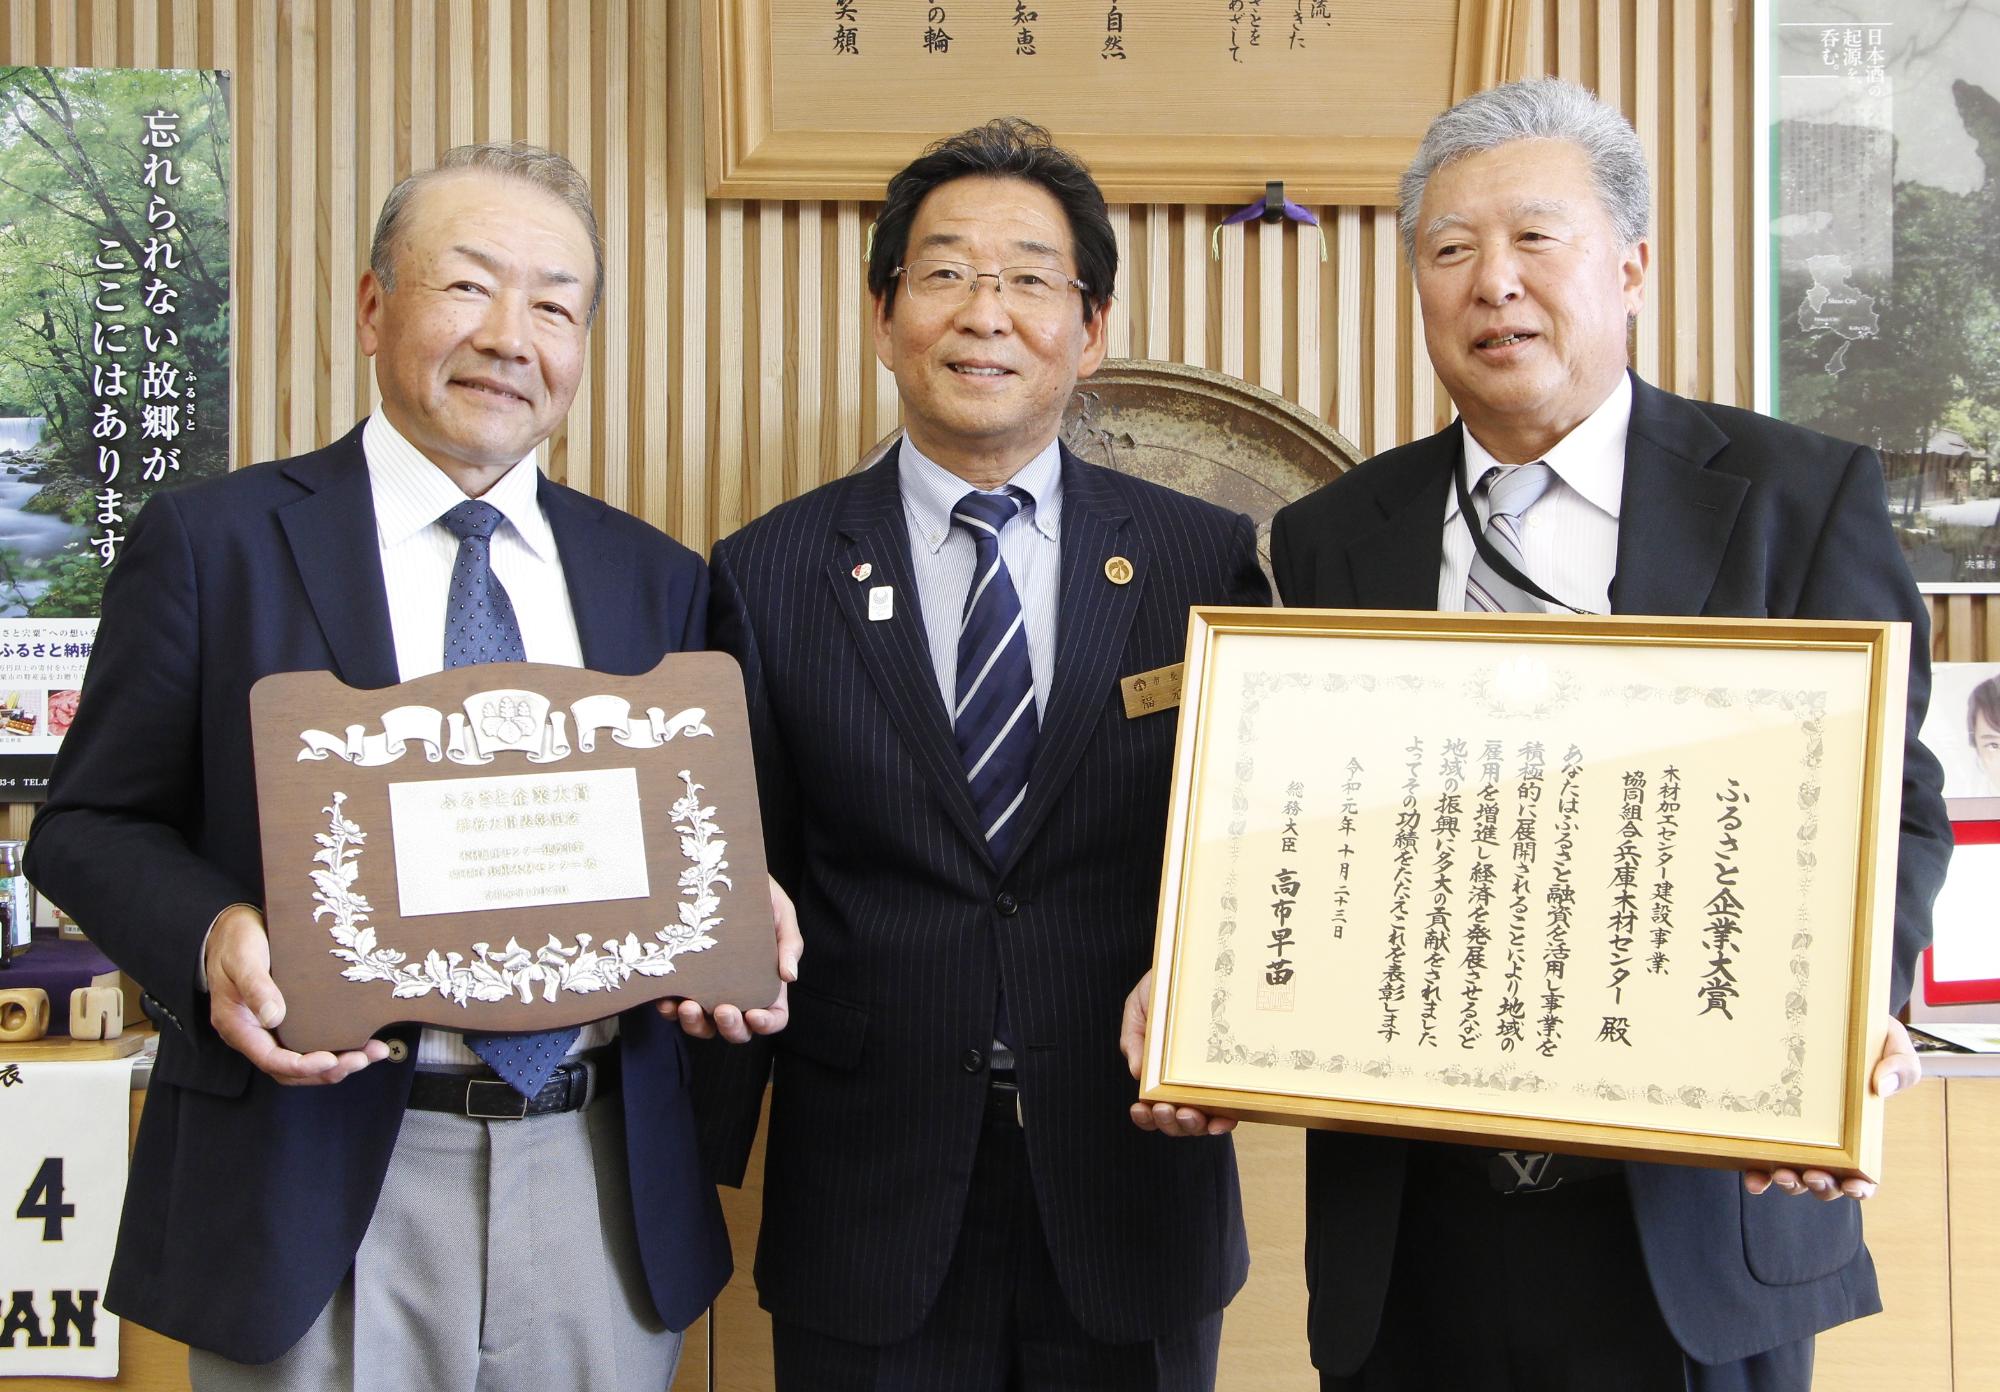 表彰状を持ったひょうご木材センターの役員二人と市長が並んで笑っている写真